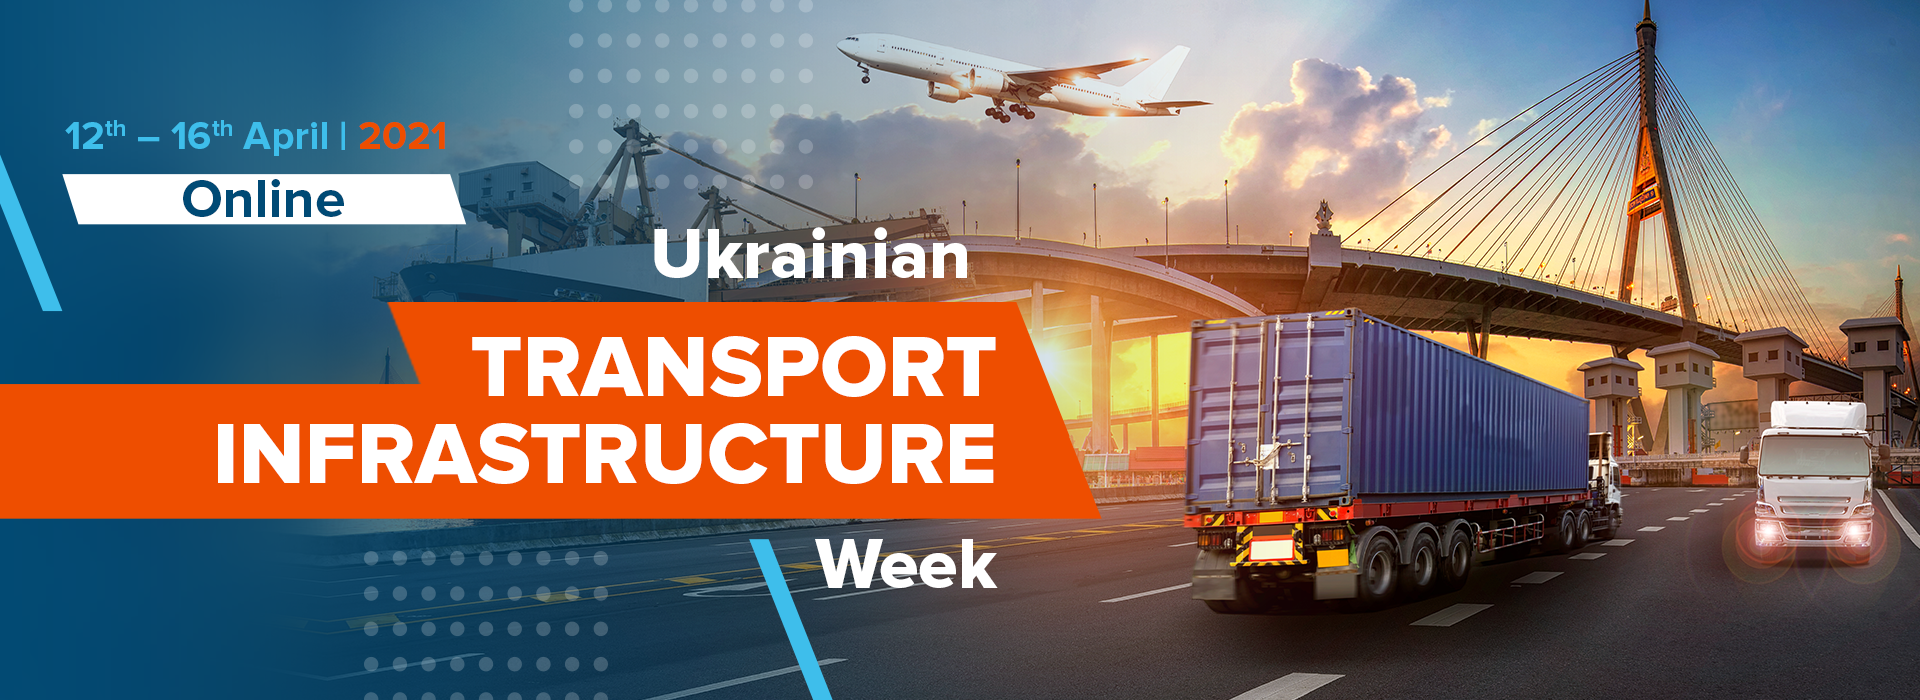 Ukrainian Transport Infrastructure Week